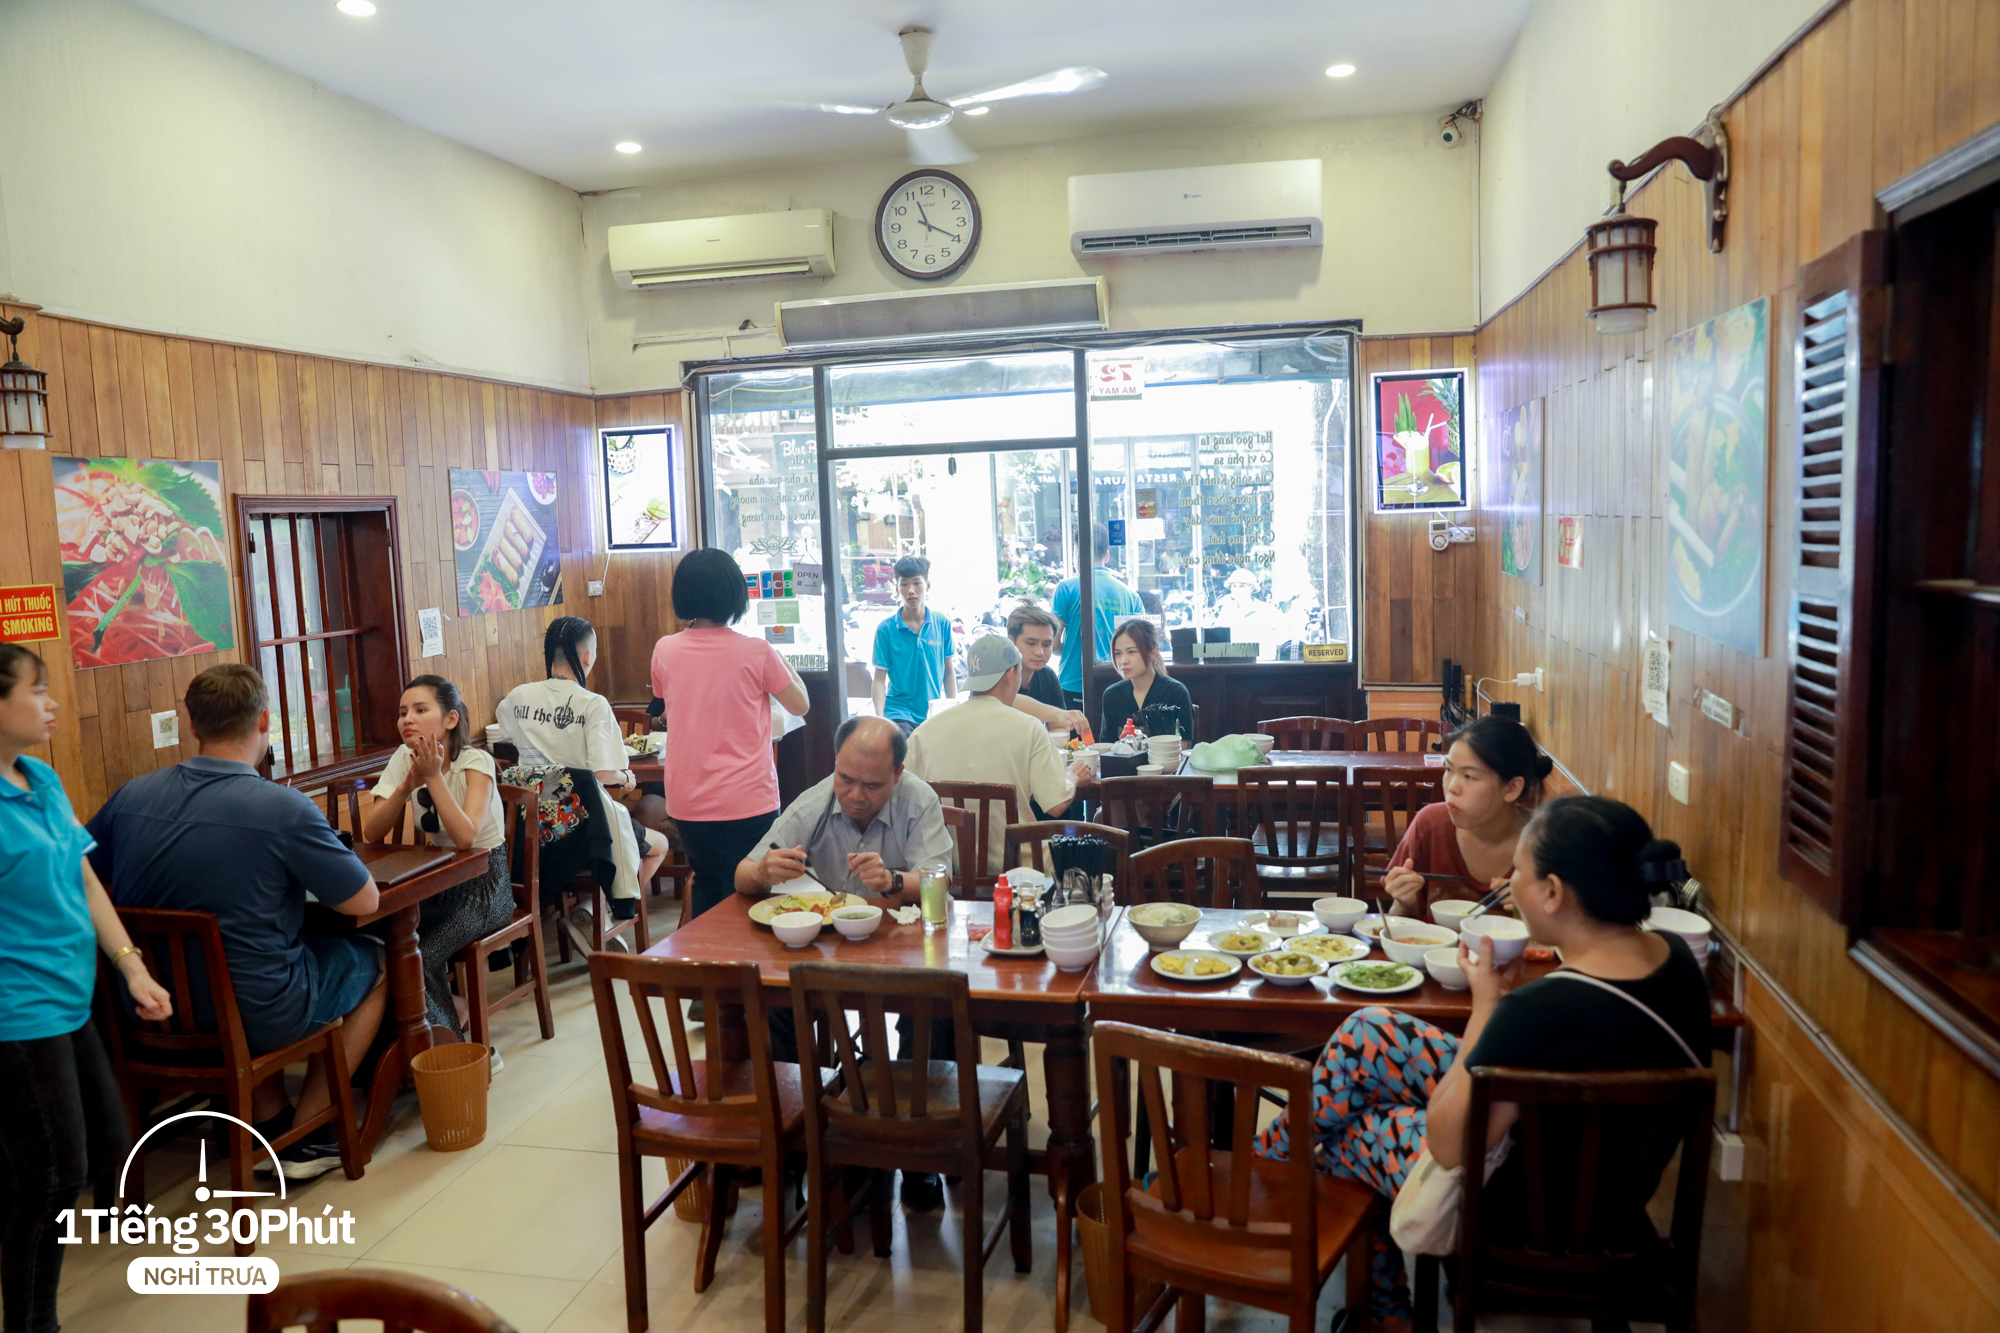 Hàng cơm trưa ở phố cổ Hà Nội toàn phục vụ “dân công sở hạng sang”, đến người nước ngoài cũng biết và tần suất ăn chung cùng người nổi tiếng rất cao - Ảnh 15.